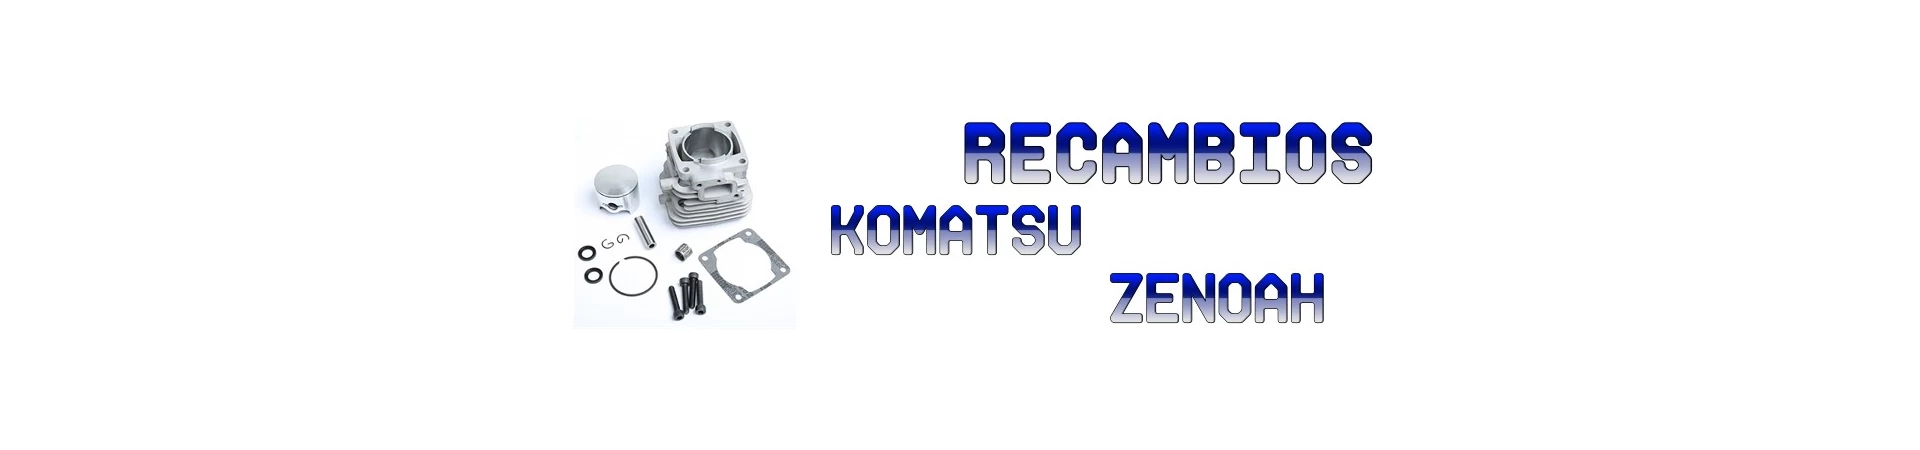 RECAMBIOS para Maquinaria KOMATSU y ZENOAH